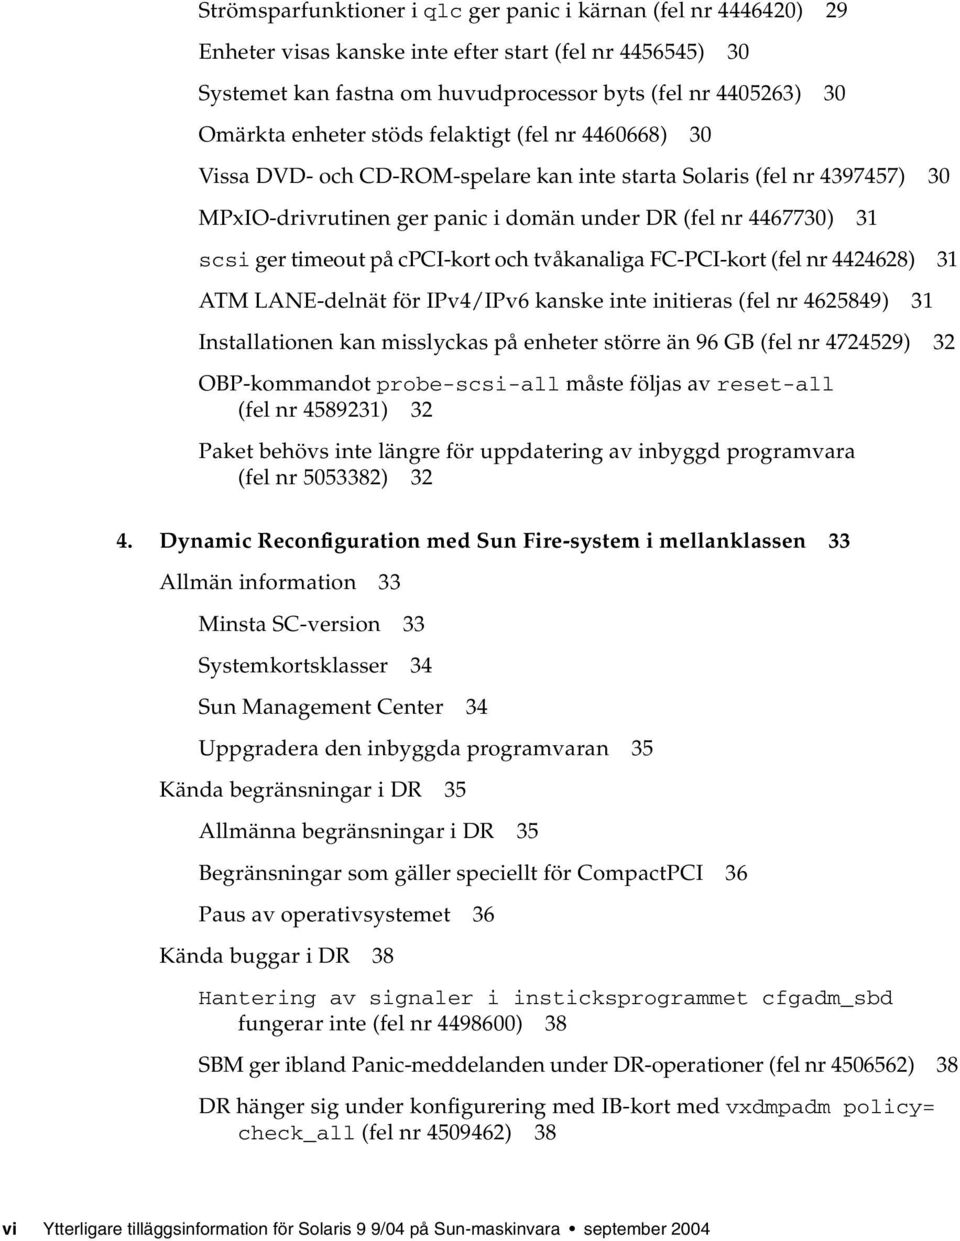 på cpci-kort och tvåkanaliga FC-PCI-kort (fel nr 4424628) 31 ATM LANE-delnät för IPv4/IPv6 kanske inte initieras (fel nr 4625849) 31 Installationen kan misslyckas på enheter större än 96 GB (fel nr